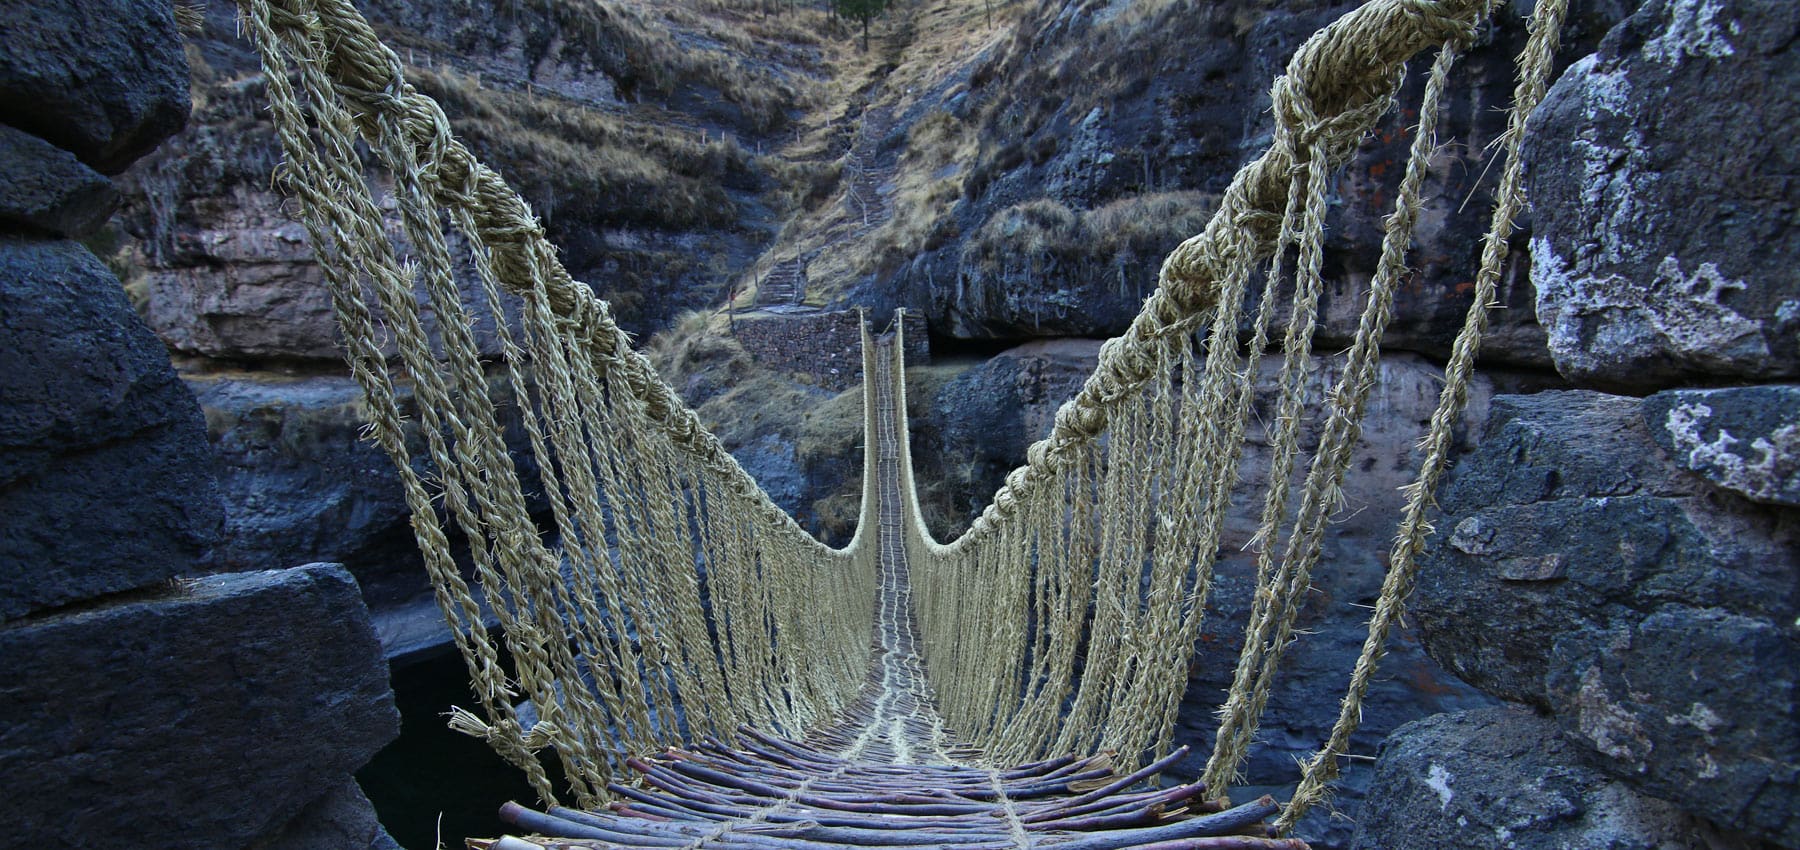 Qeswachaka Woven Bridge